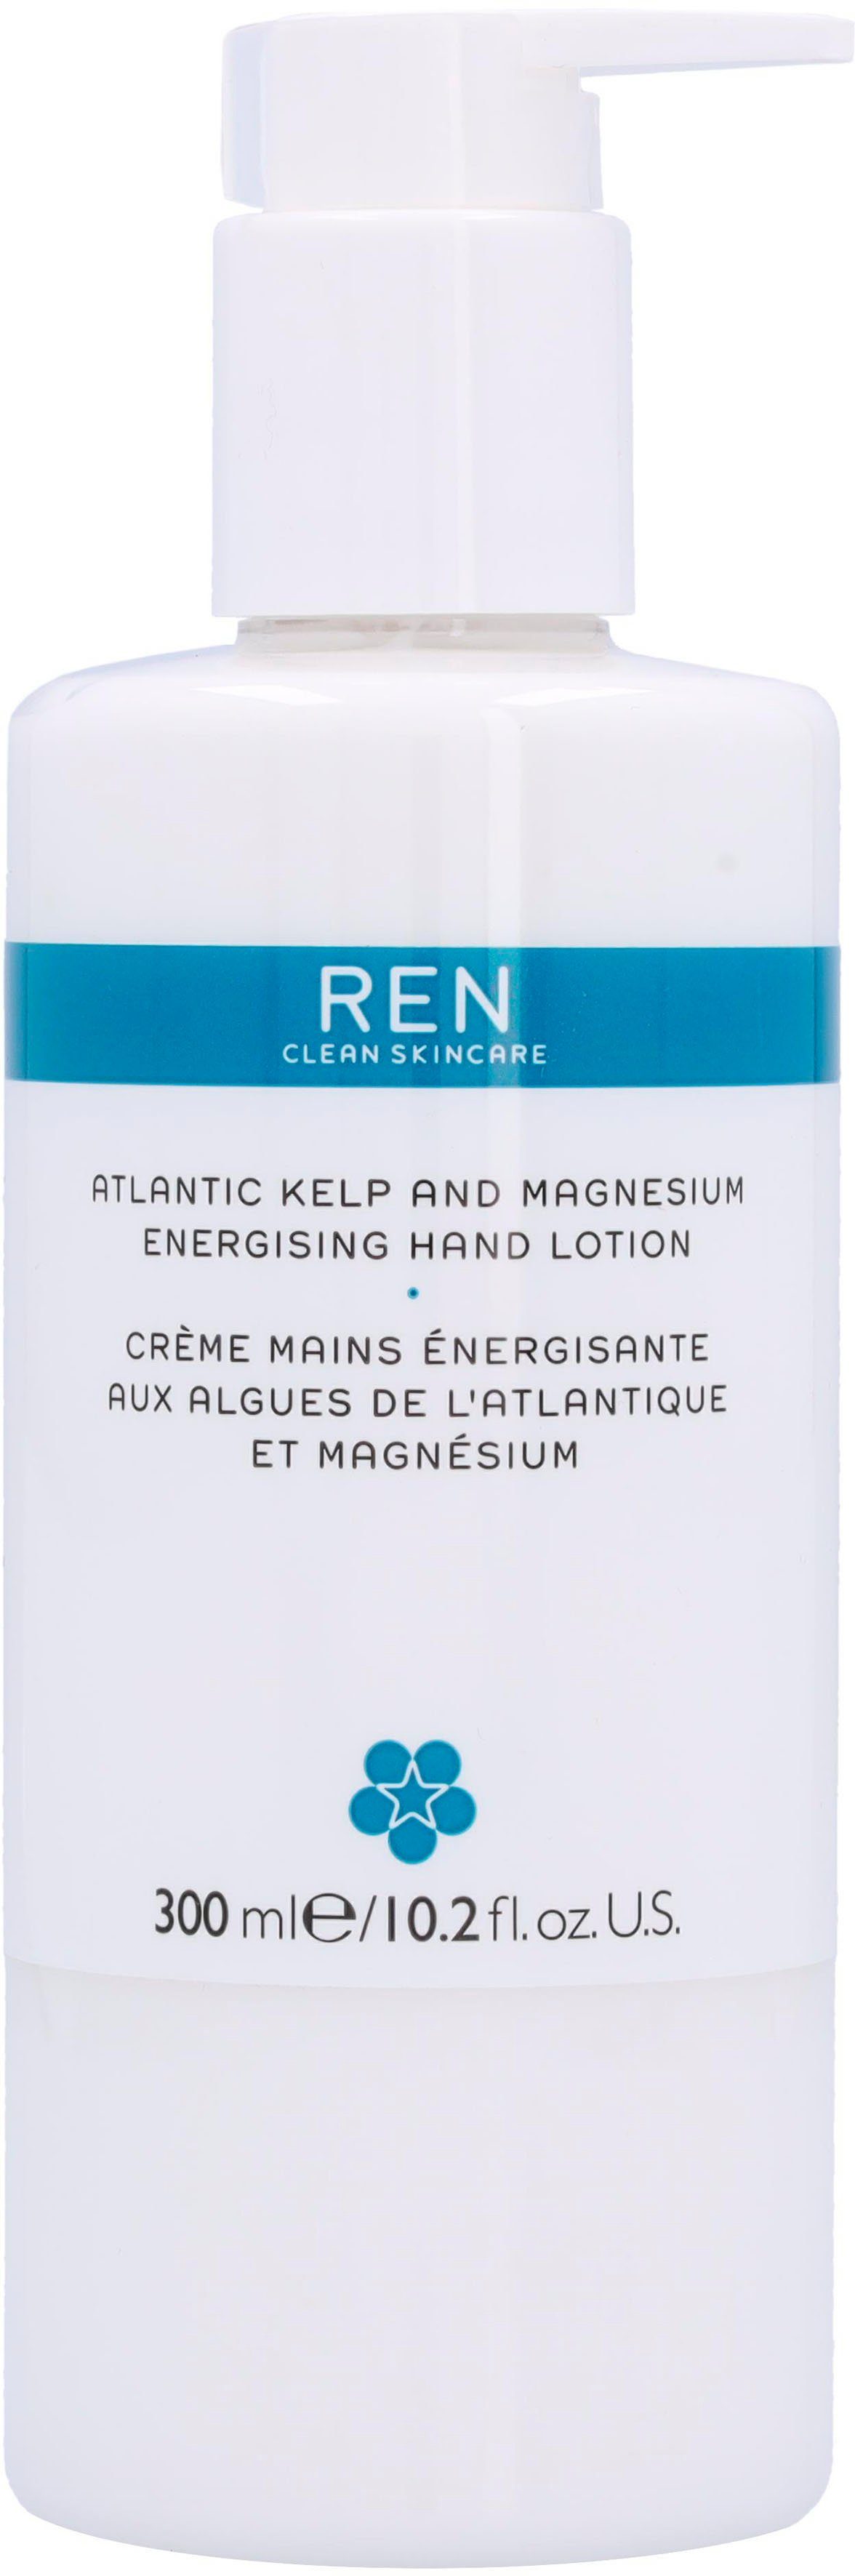 Clean Skincare Magnesium Handlotion And Kelp Lotion Ren Atlantic REN Hand Energising